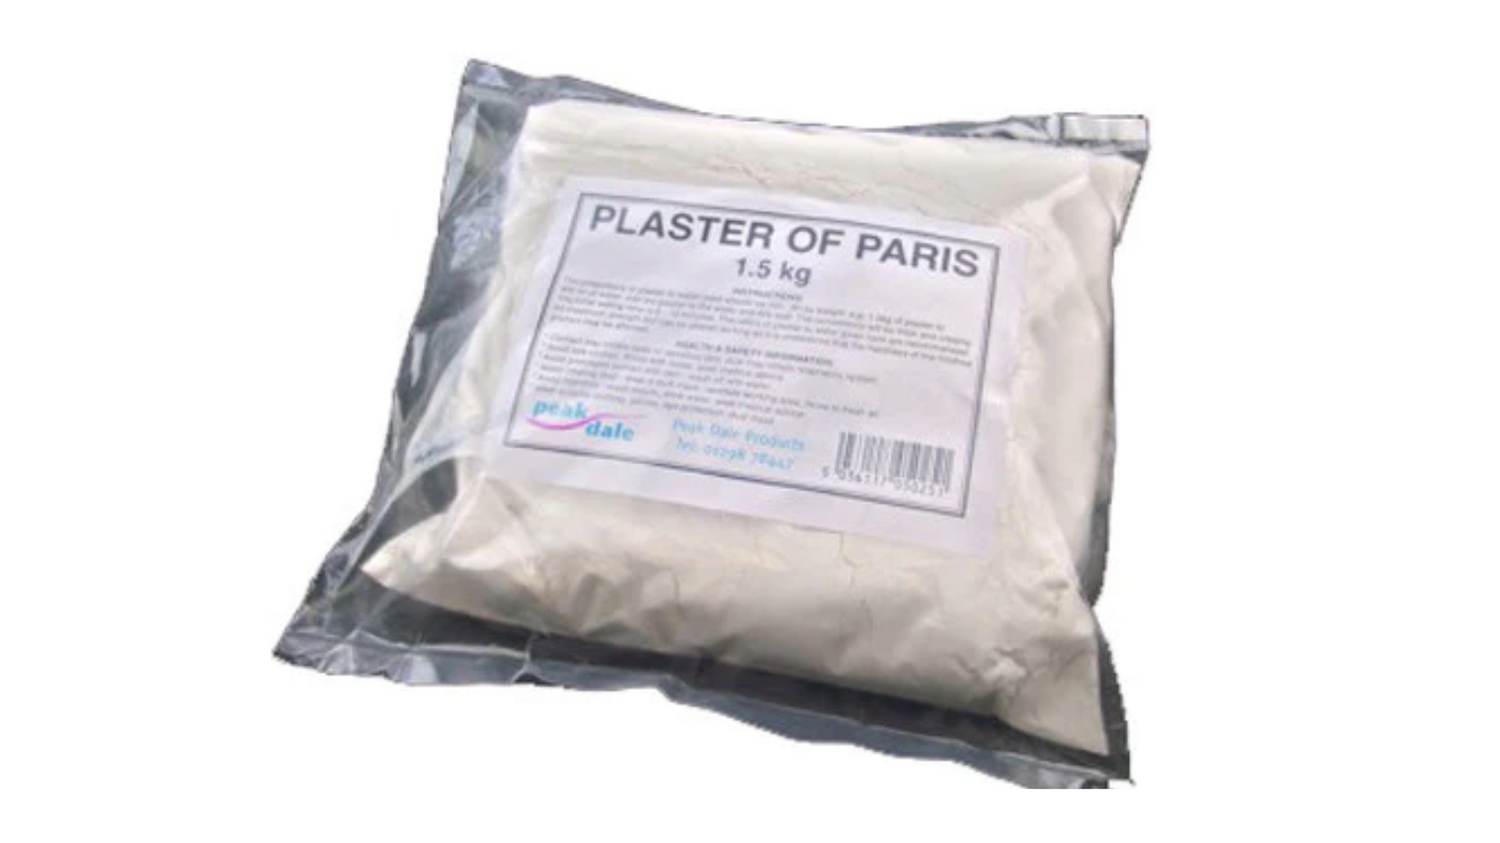 Plaster of paris